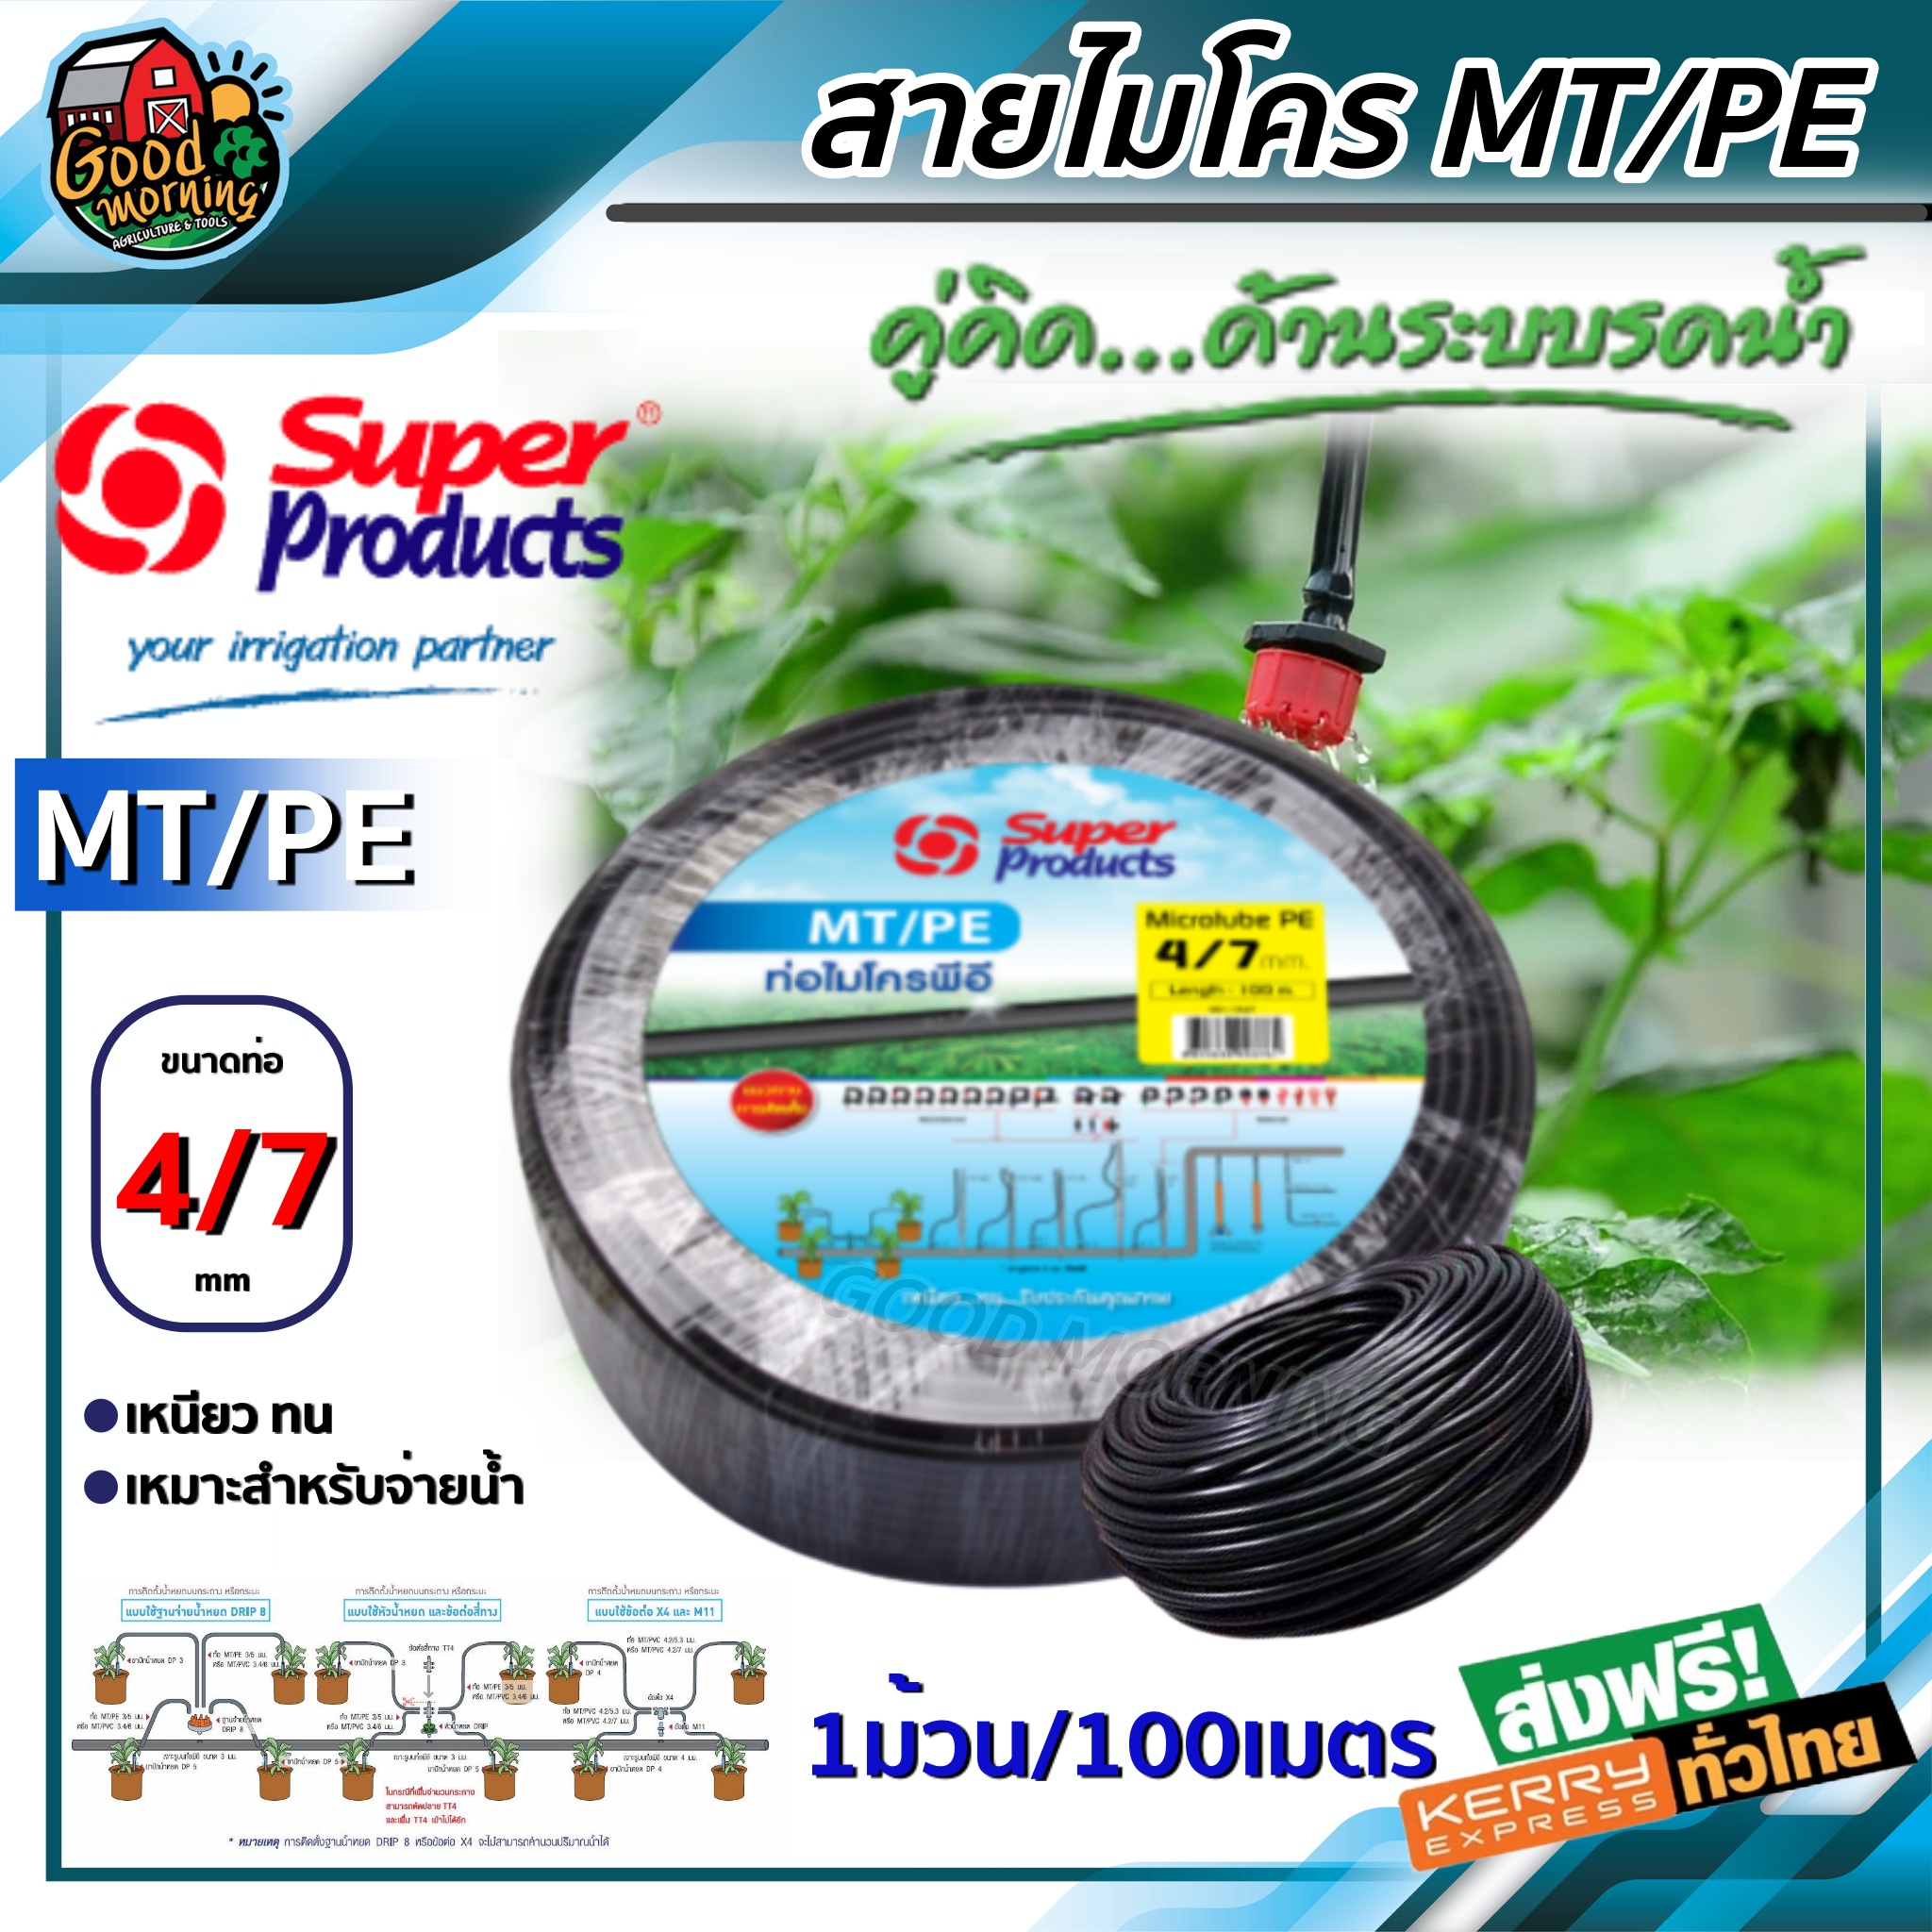 ท่อพีอี SUPER ขนาด 4/7 mm ยาว 100 เมตรเต็ม MT/PE ท่อไมโคร สายไมโคร ท่อPE ท่อพีอี สายพีอี ซุปเปอร์โปรดักซ์ SUPER PRODUCTS ท่อ LDPE ส่งฟรีทั่วไทย เก็บเงินปลายทาง